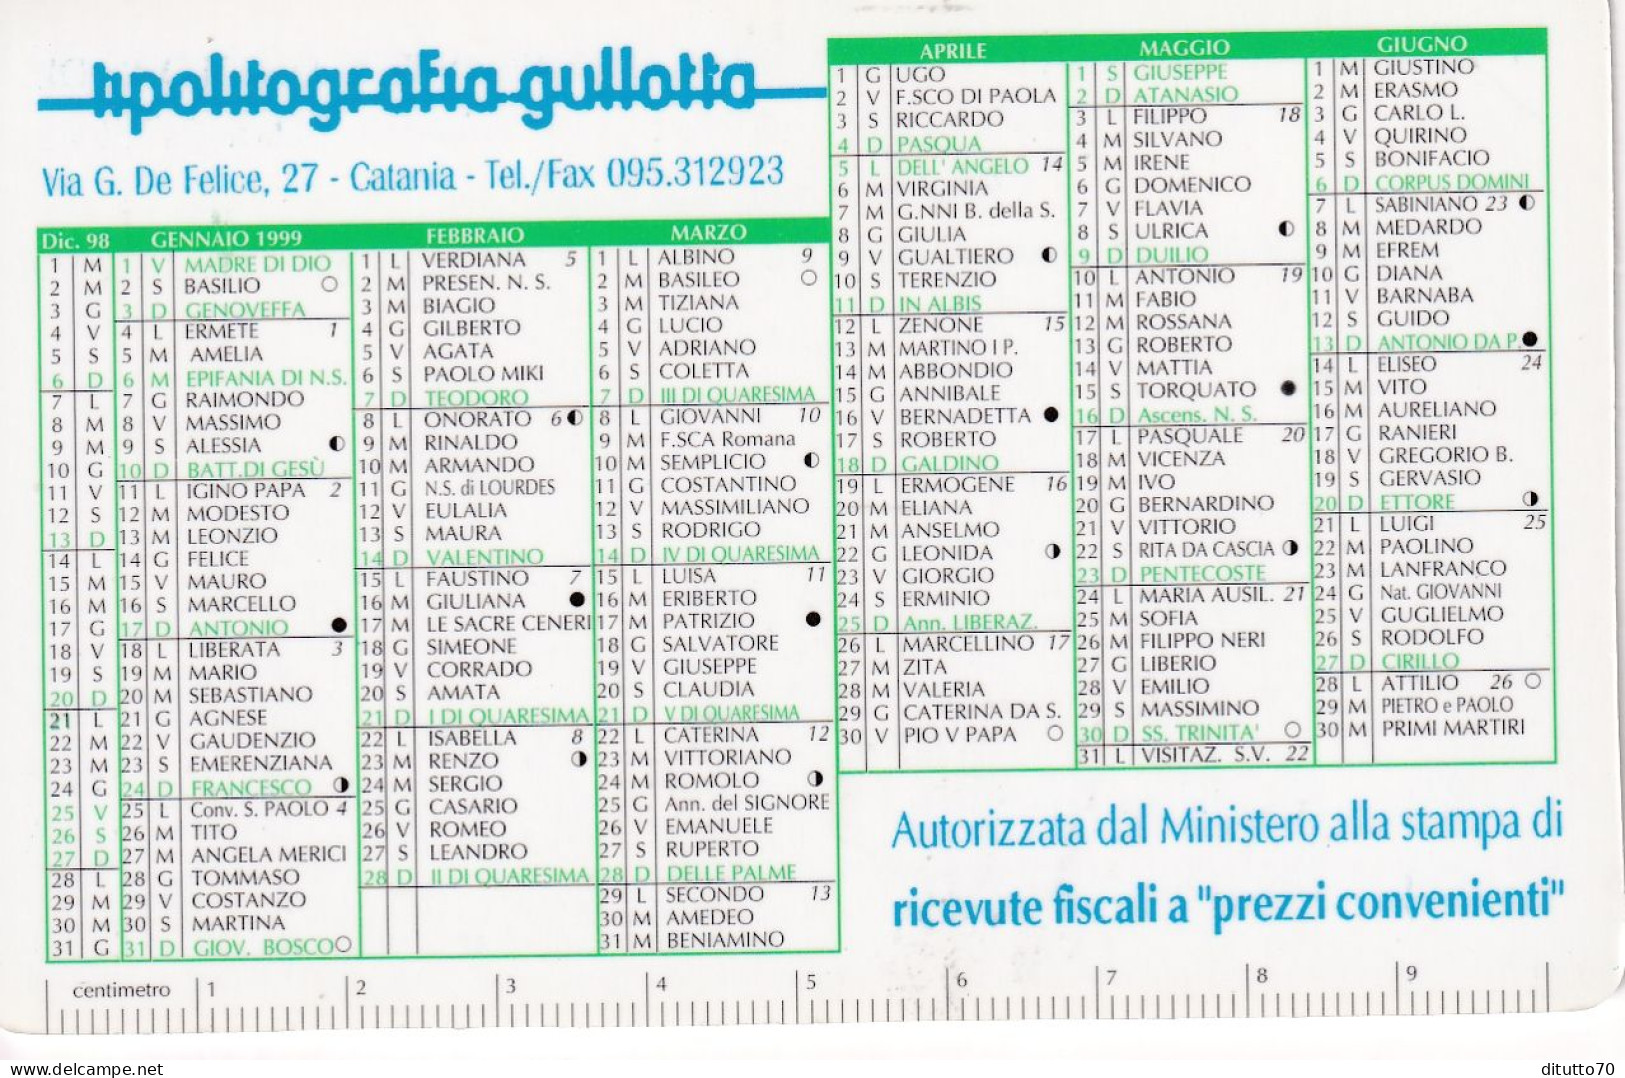 Calendarietto - Lipolitografia Gullotta - Catania - Anno 1999 - Small : 1991-00